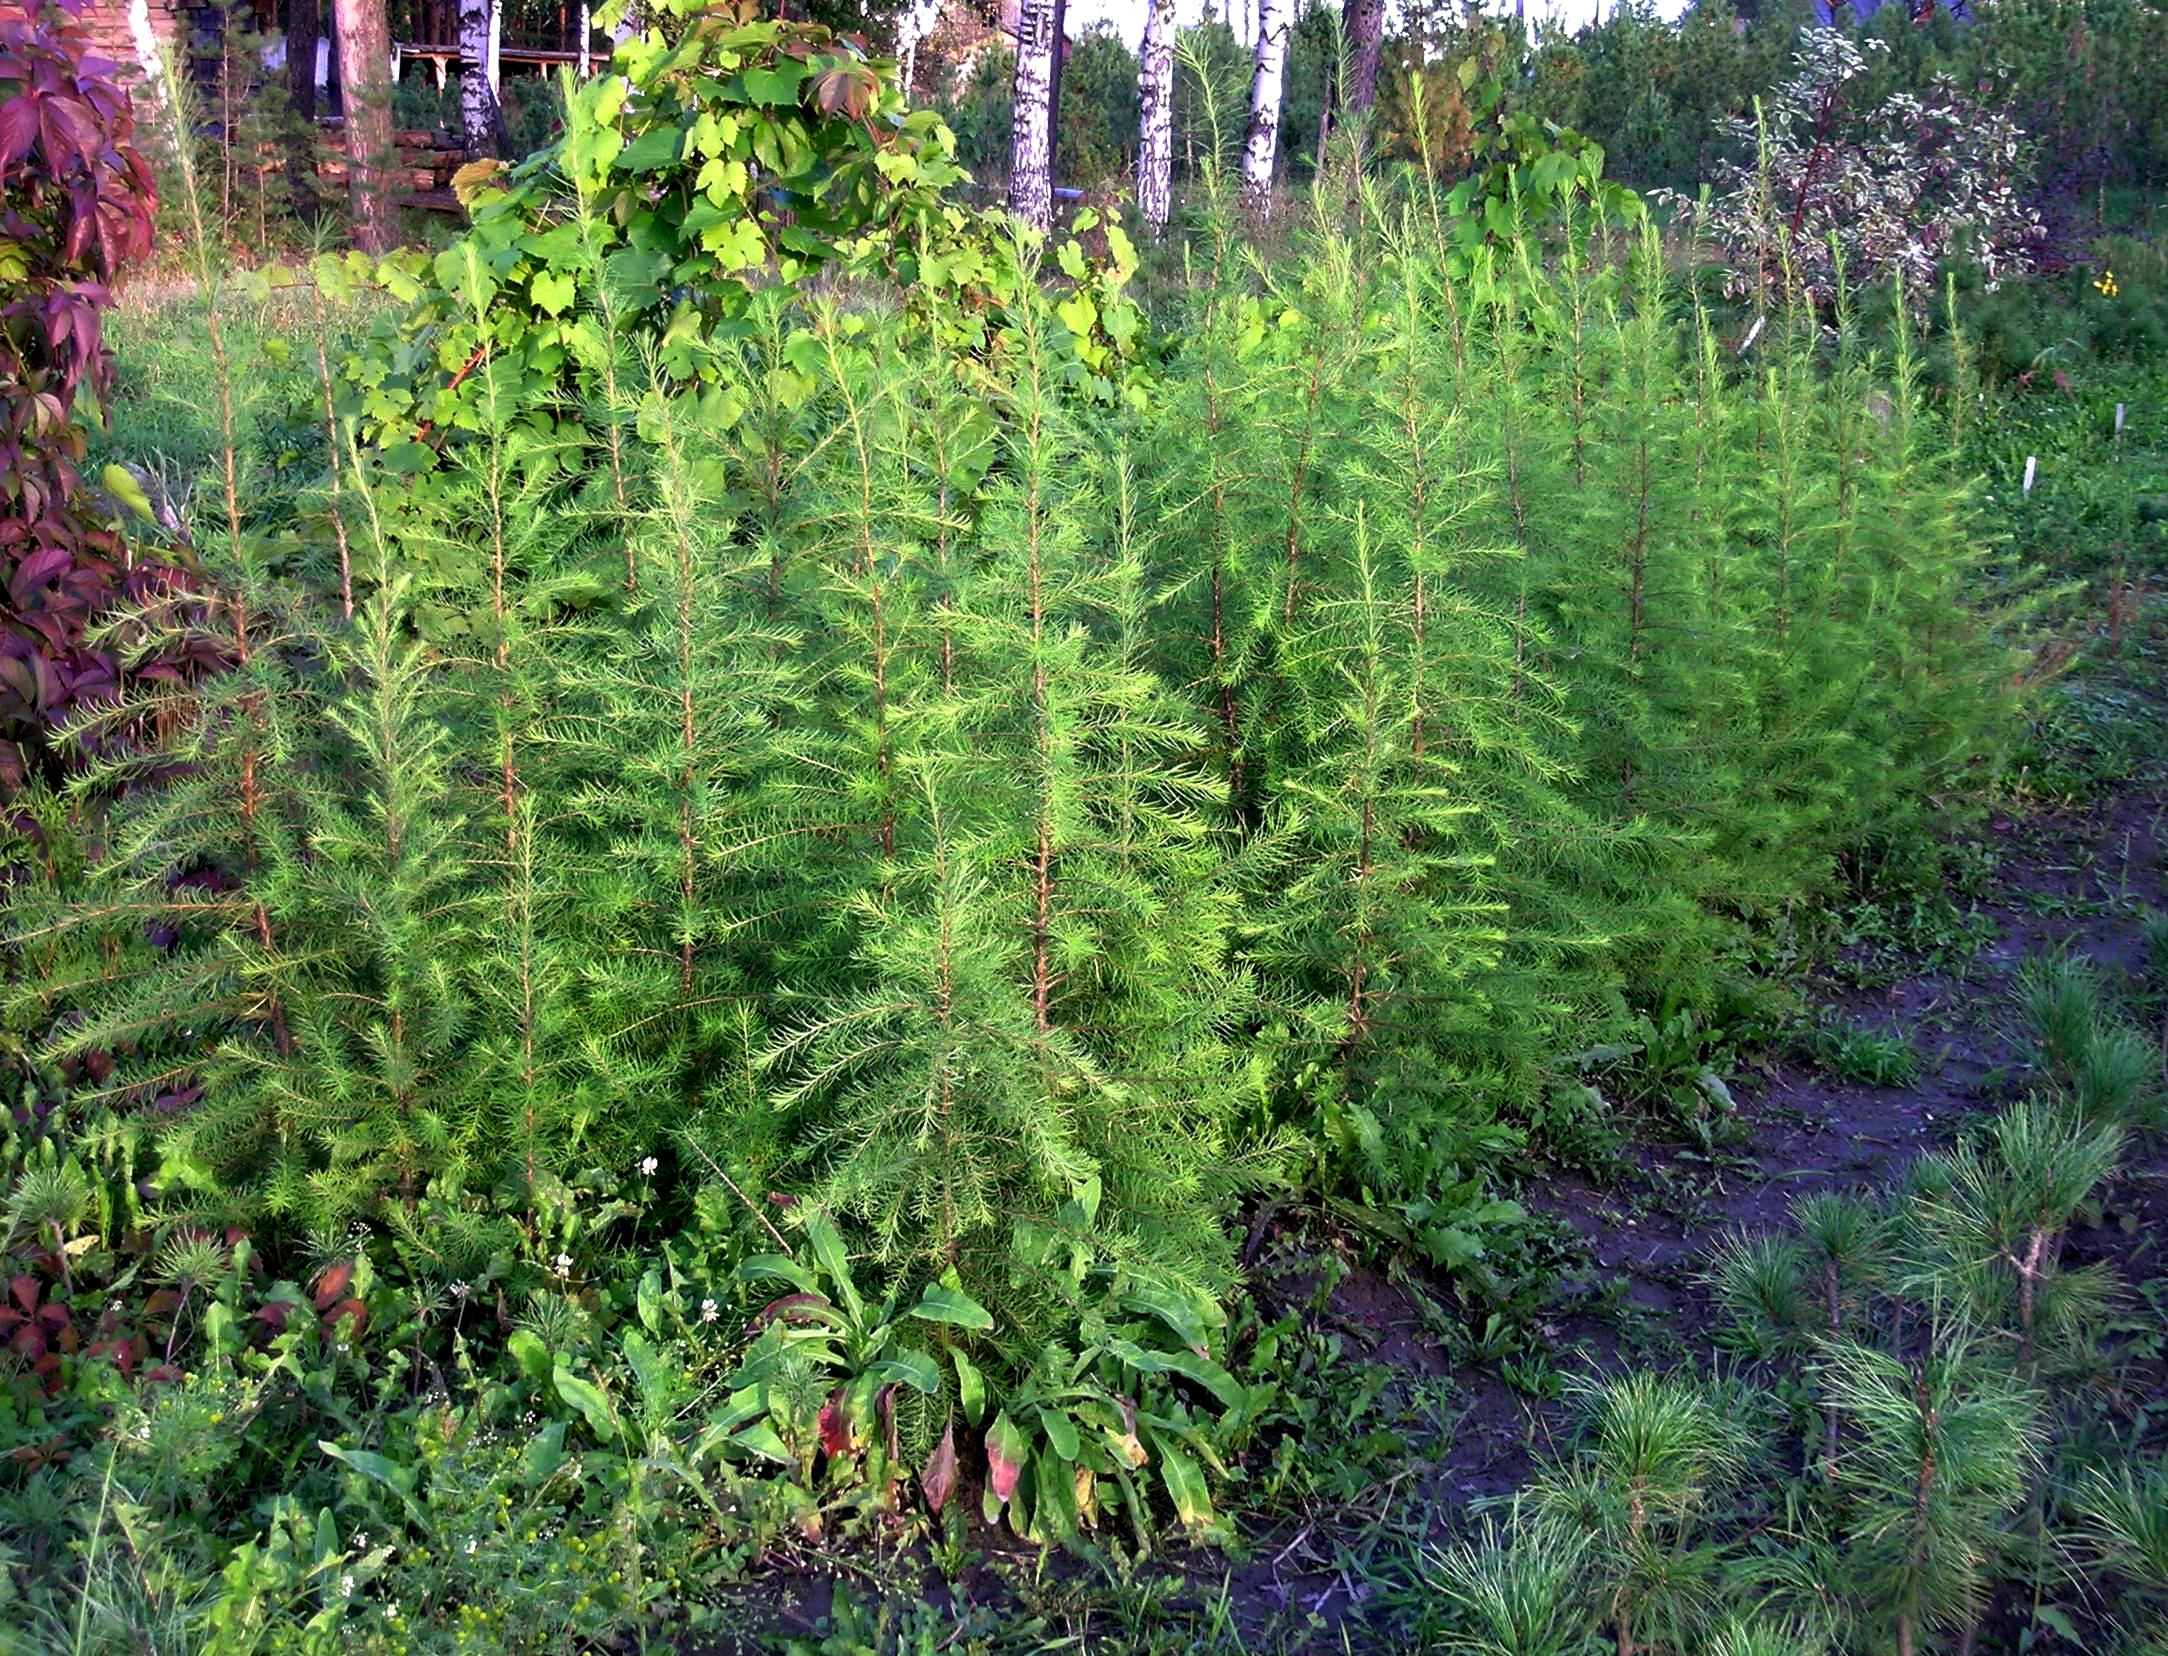 Второй положительный пример – лиственница гмелина. Она восточносибирская, из регионов с очень жестким климатом. В Западной Сибири для нее, можно сказать, курортные условия. Поэтому она отлично себя чувствует, растет быстро. Здесь ей 5 лет, высота – до 1,5 м.